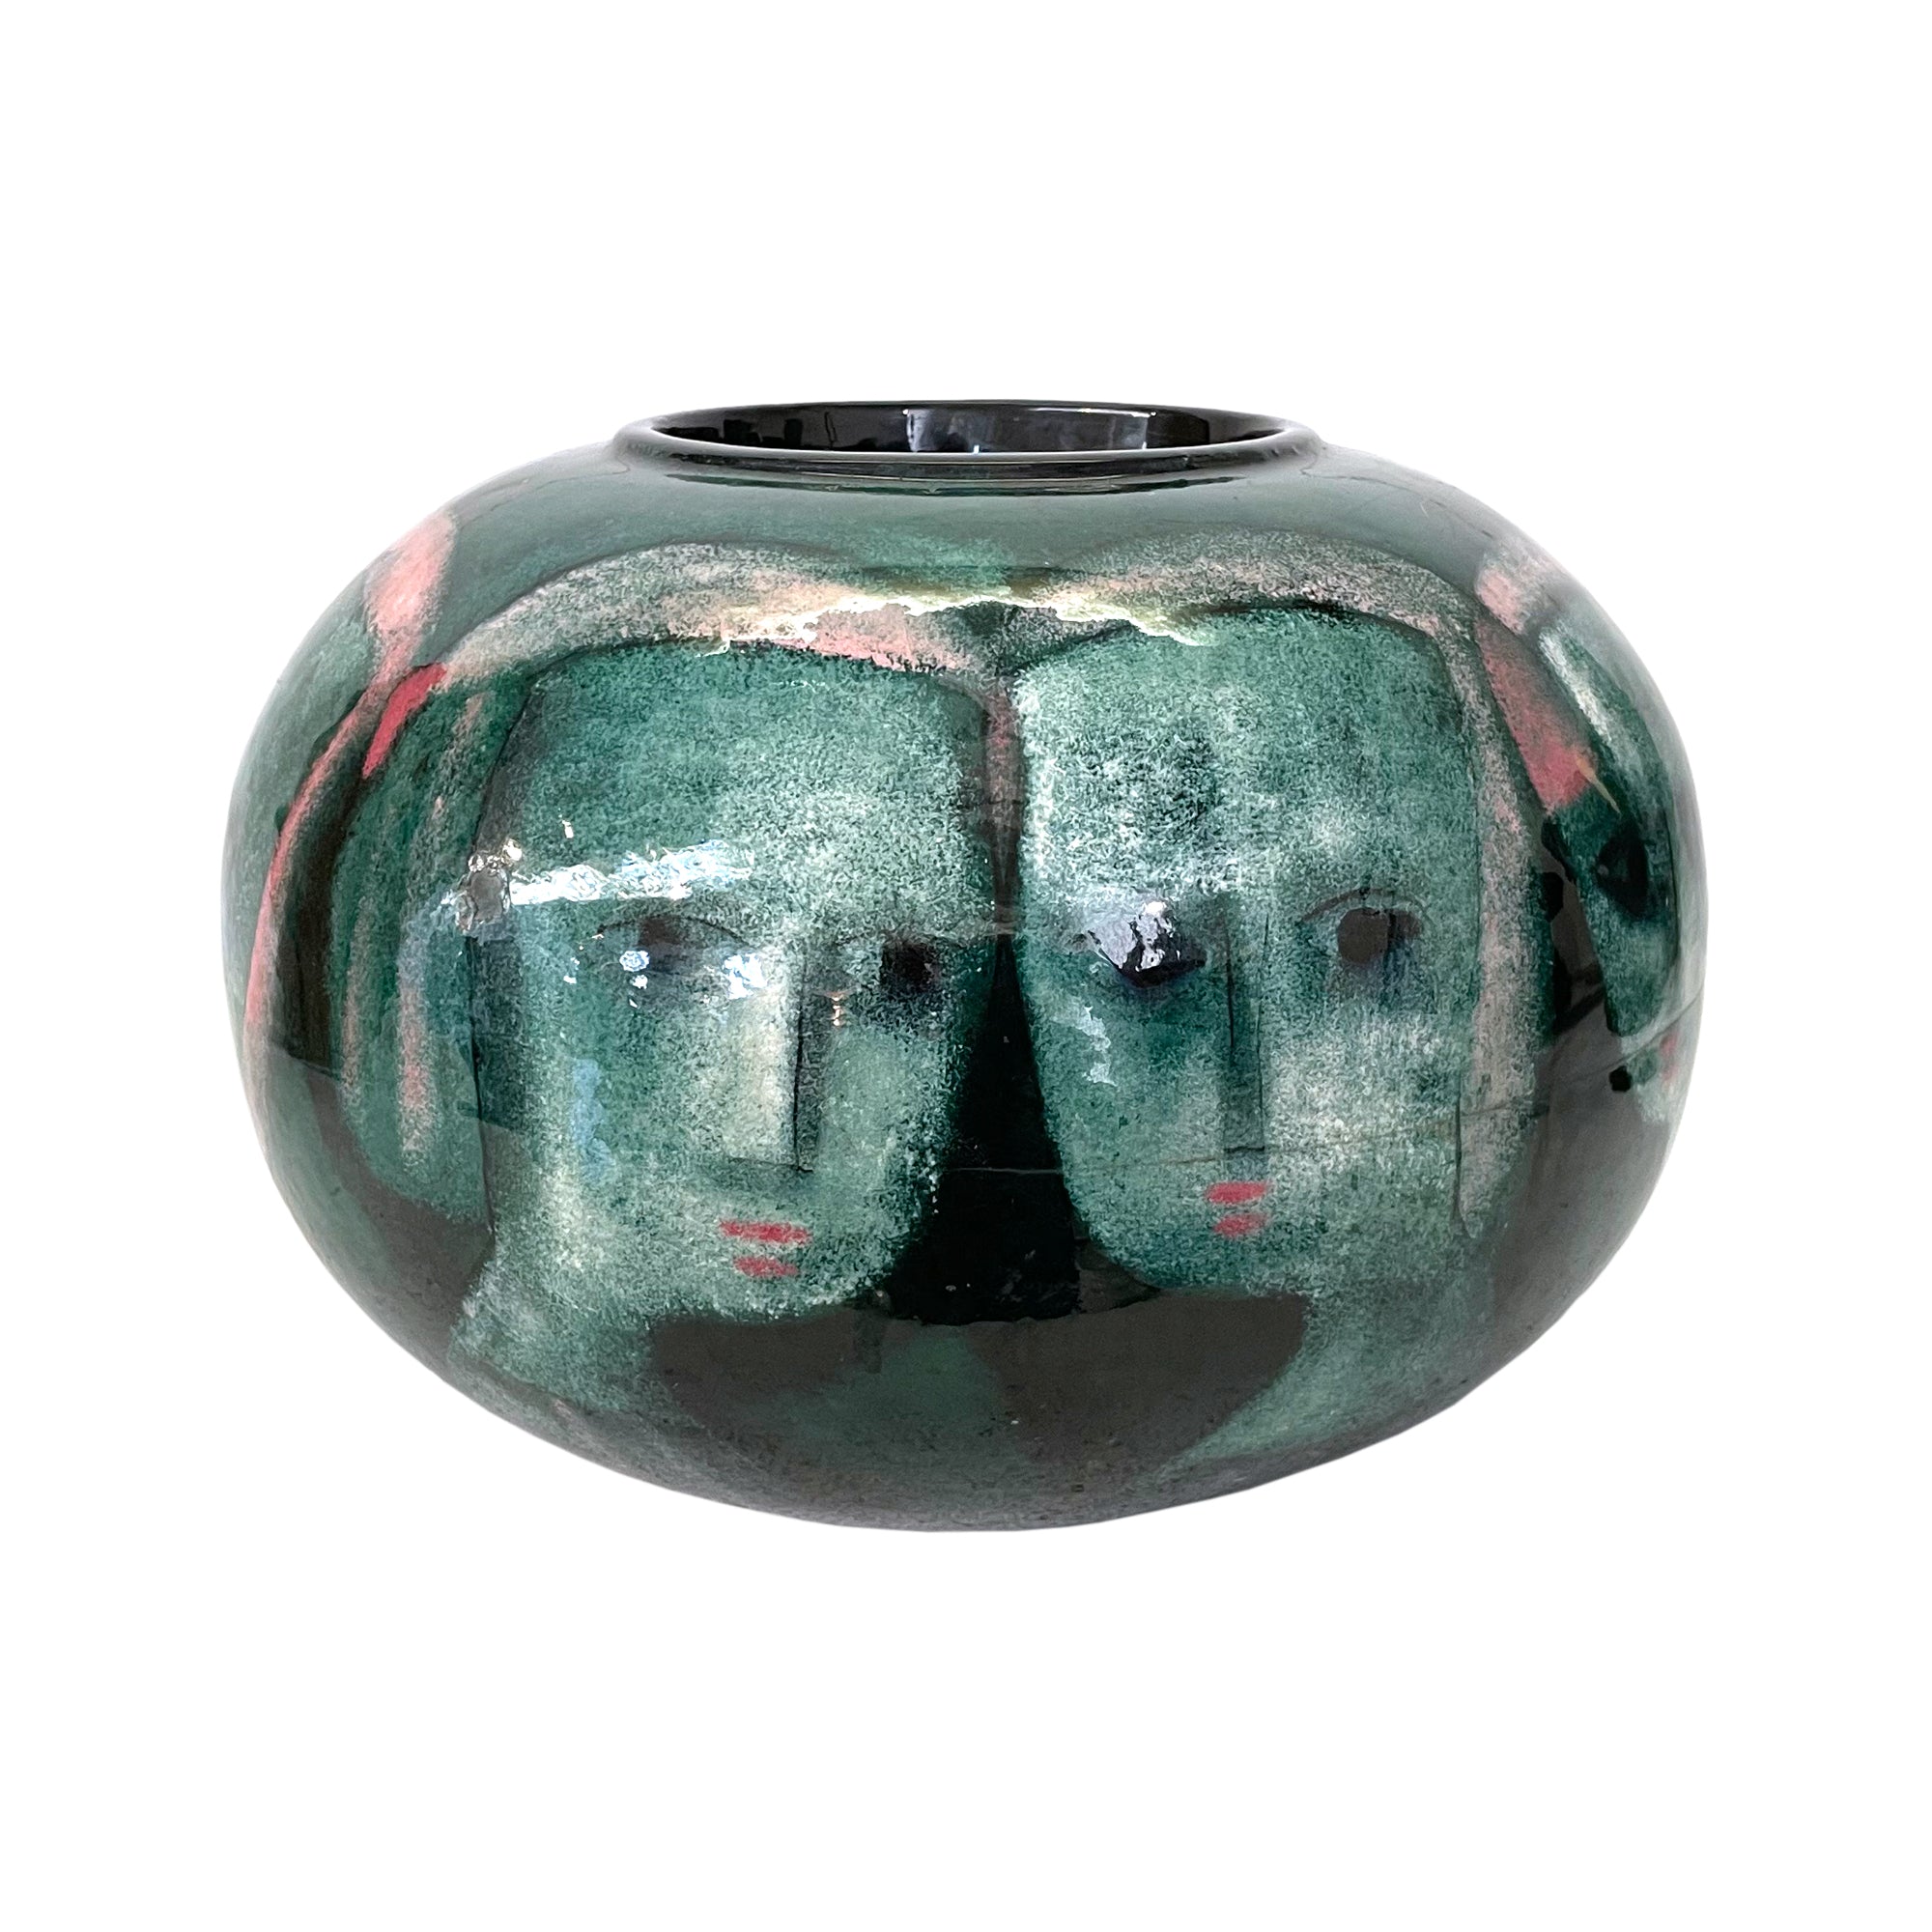 Monumental Studio Ceramic Vase by Polia Pillin